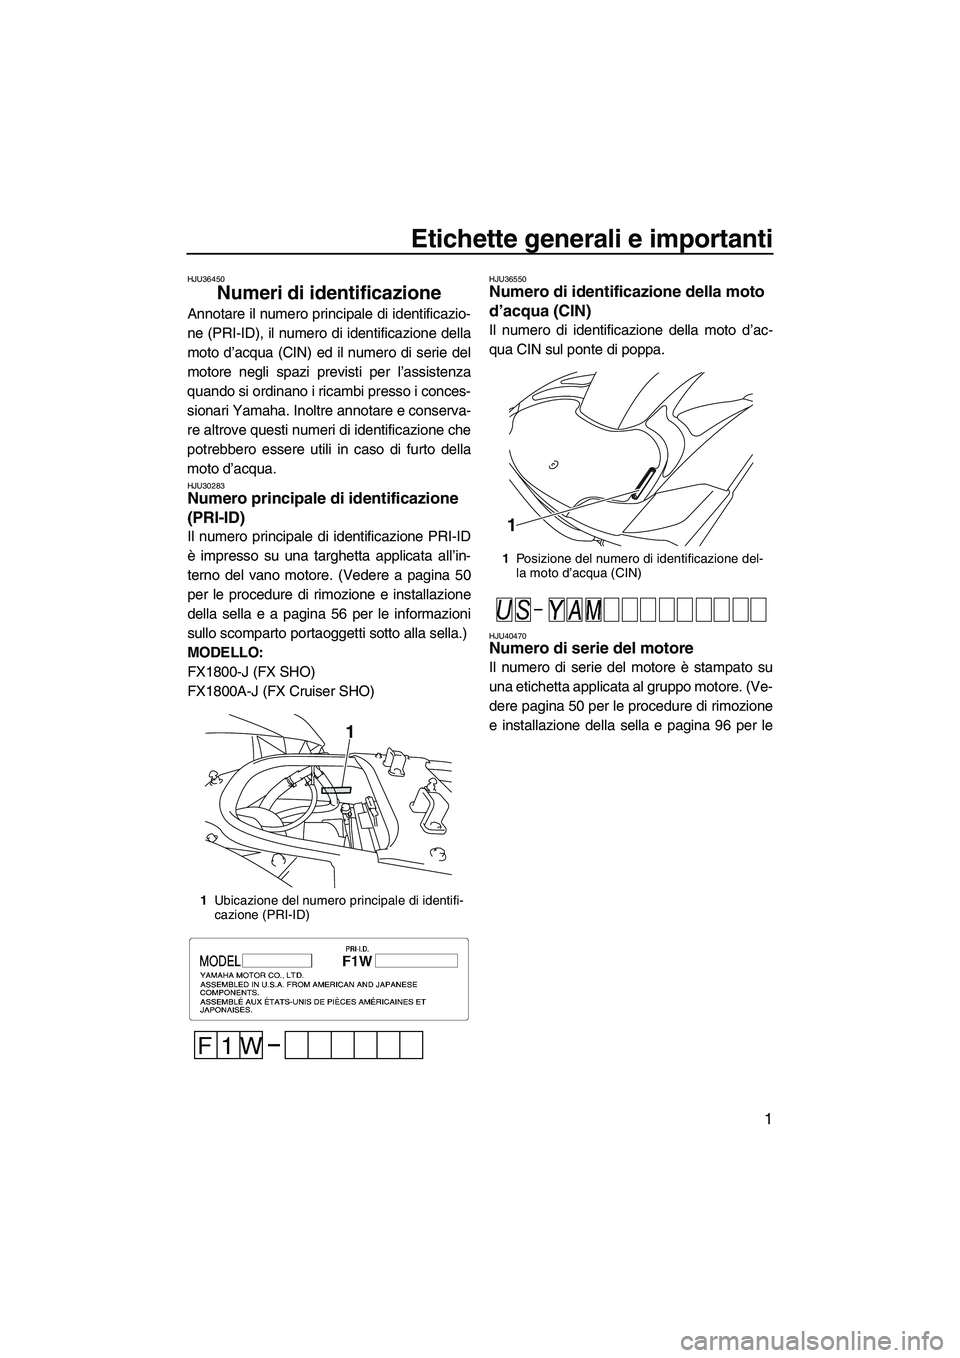 YAMAHA SVHO 2010  Manuale duso (in Italian) Etichette generali e importanti
1
HJU36450
Numeri di identificazione 
Annotare il numero principale di identificazio-
ne (PRI-ID), il numero di identificazione della
moto d’acqua (CIN) ed il numero 